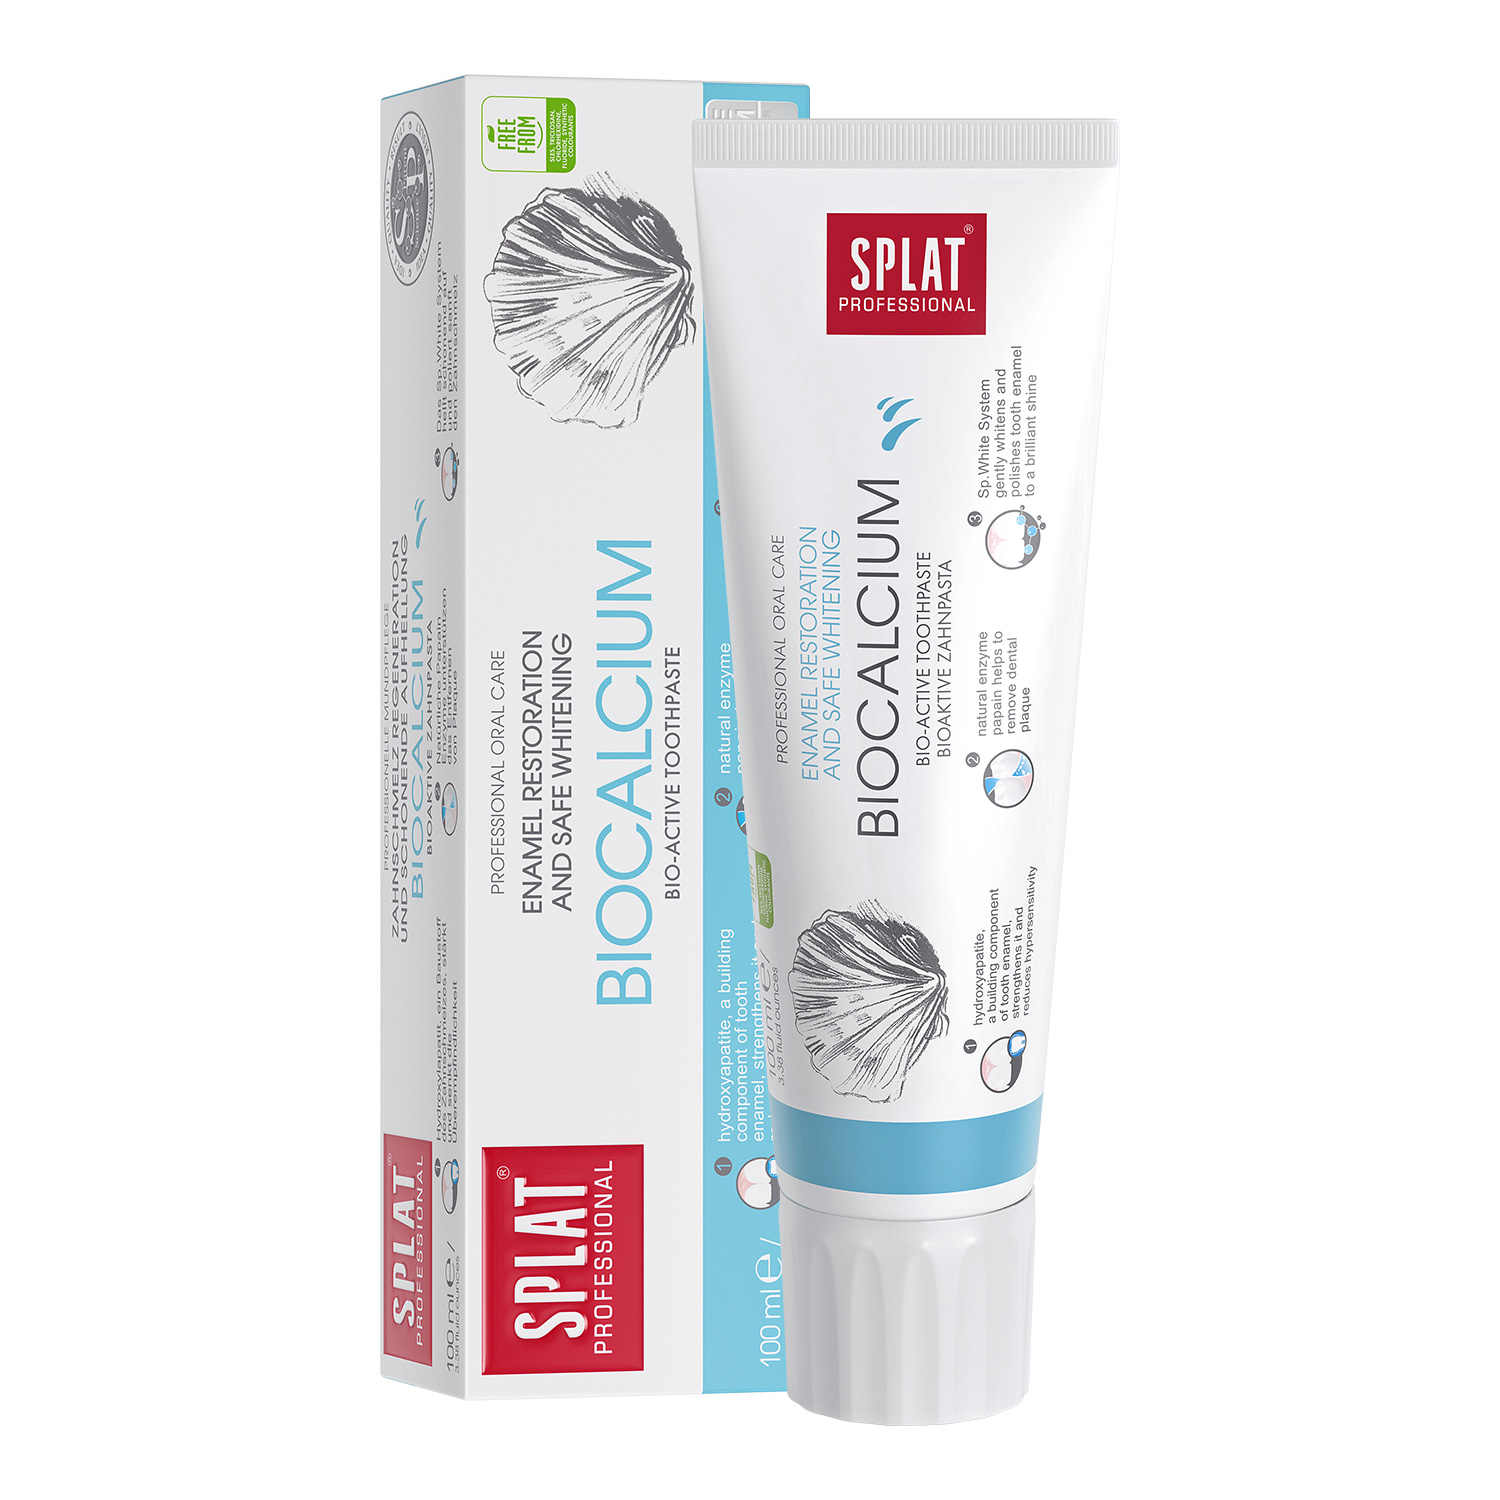 Splat Professional Biocalcium Toothpaste 100ml